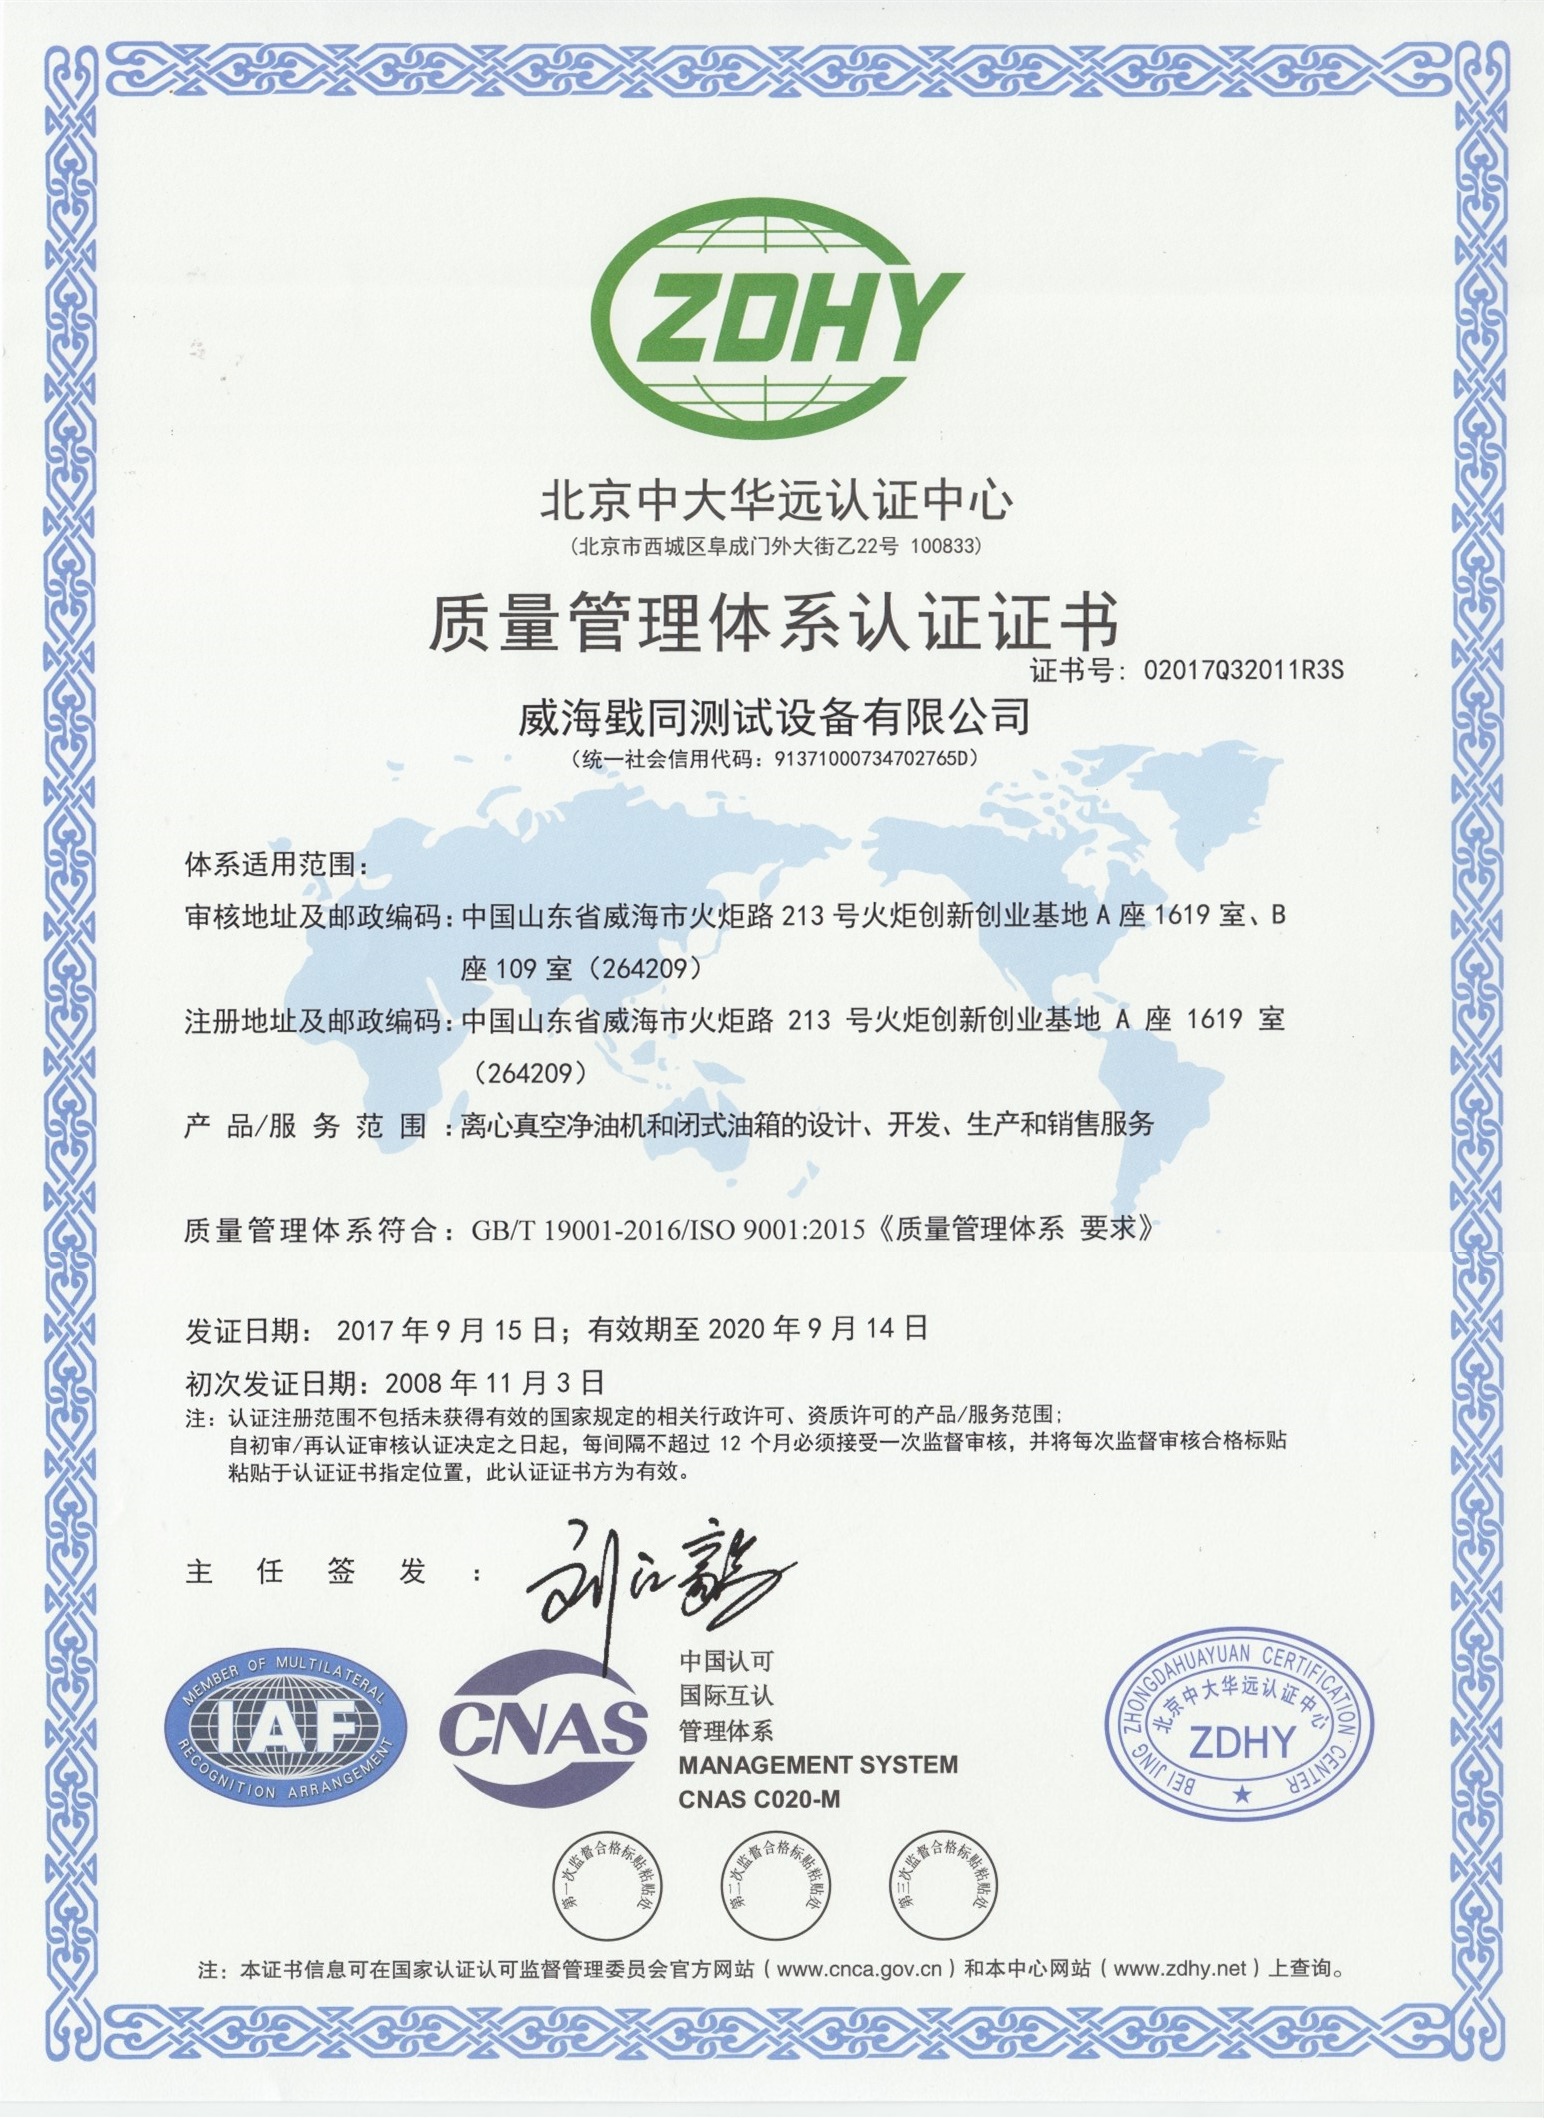 公司通过ISO9001质量管理体系认证